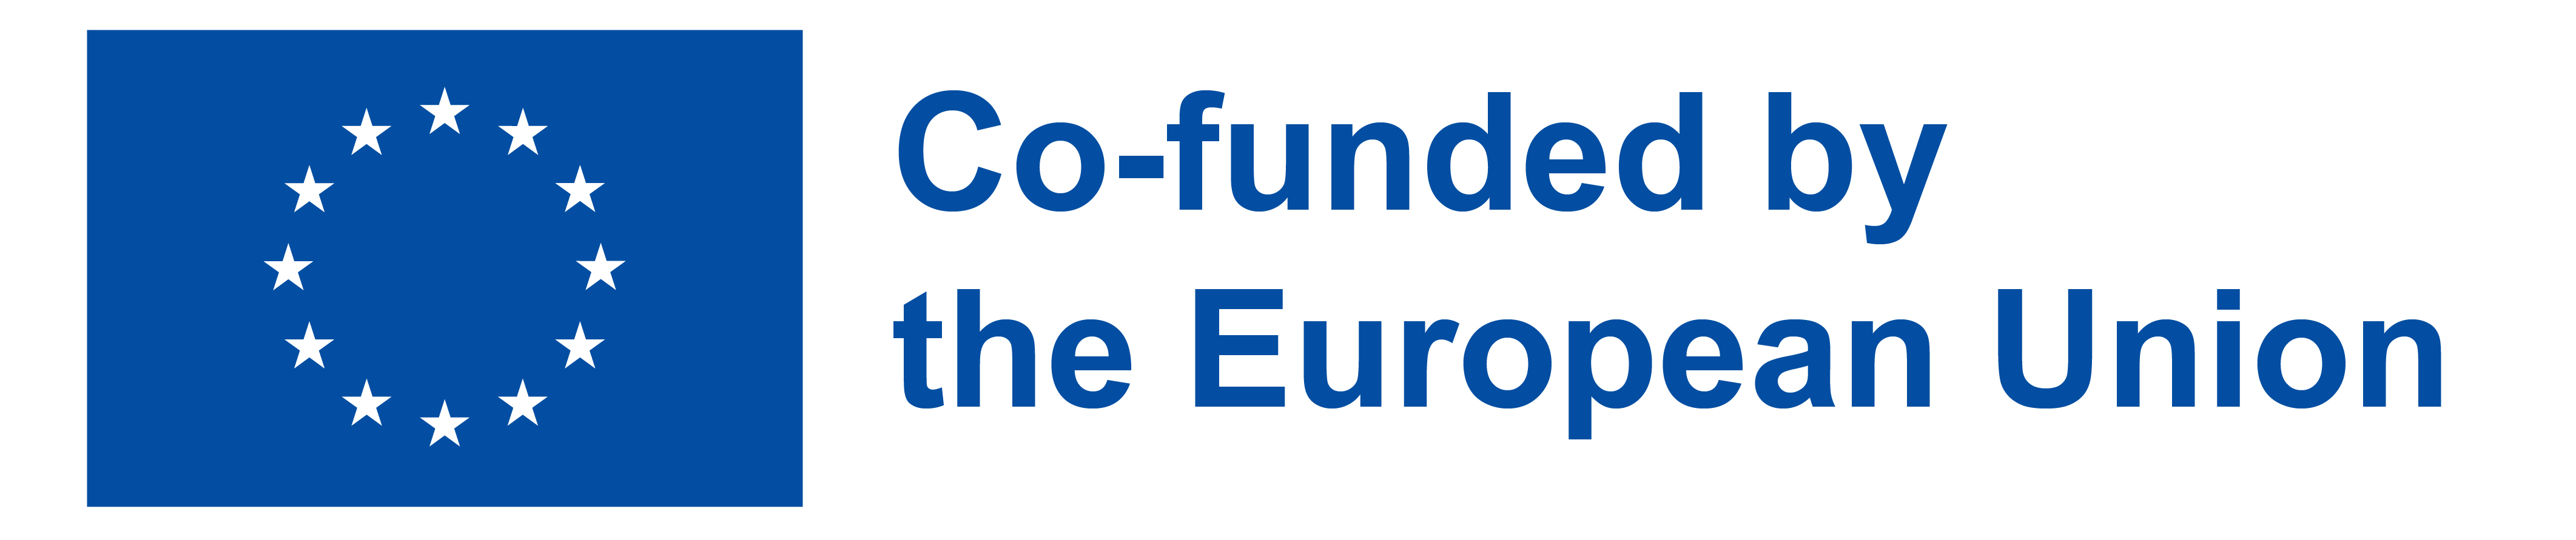 EN_Co-funded_by_the_EU_PANTONE.jpg